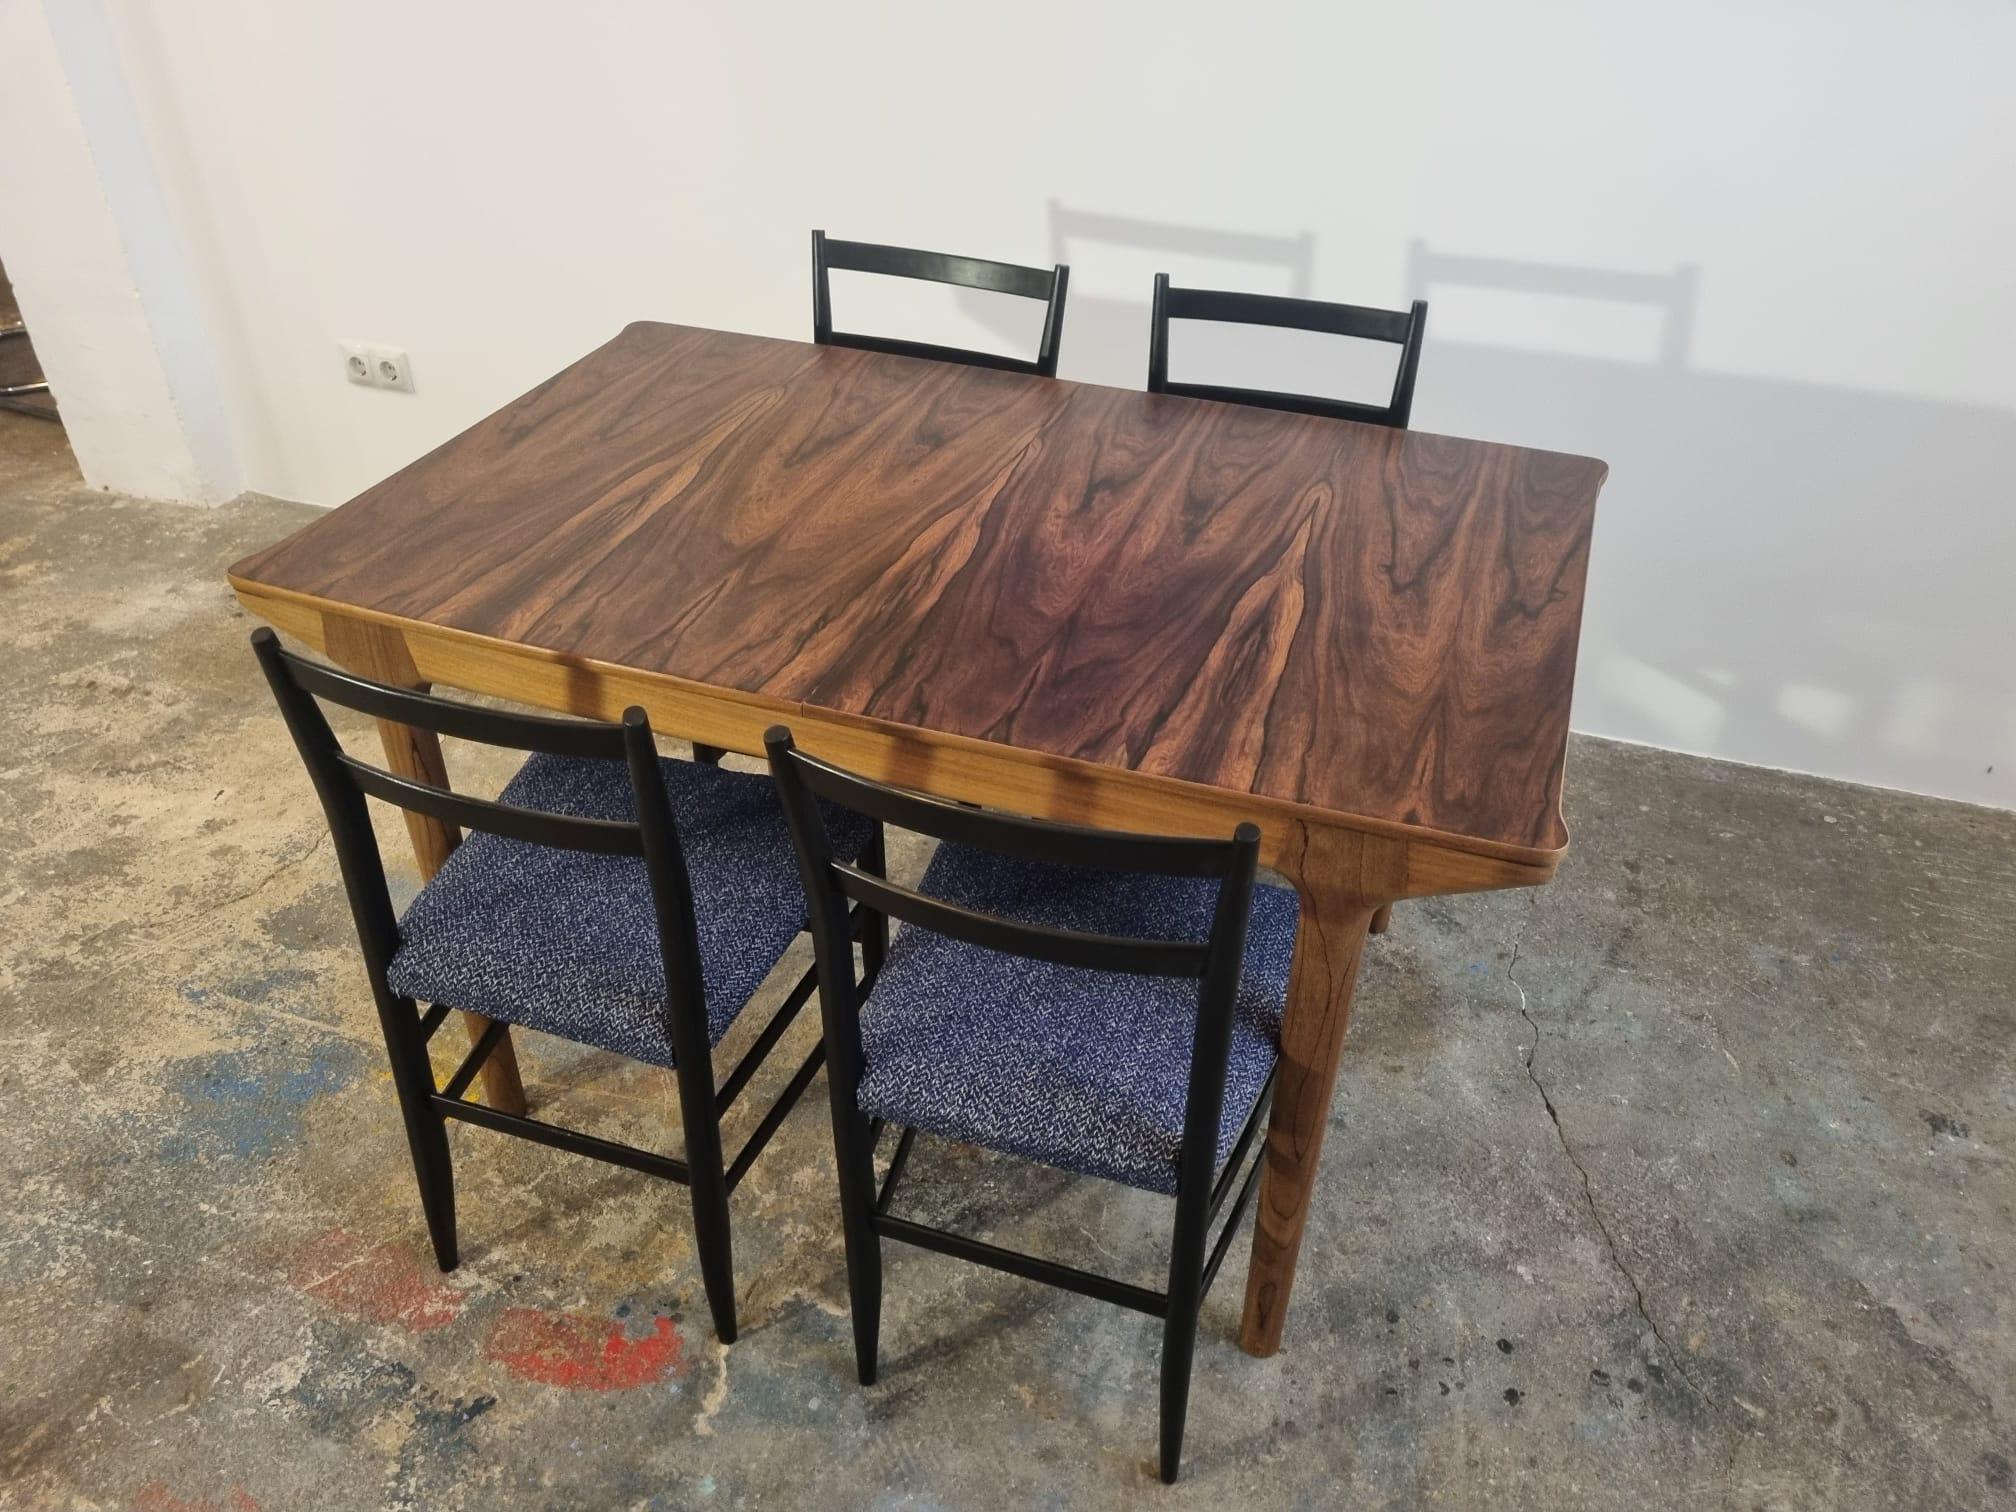 Une superbe table de salle à manger extensible en bois de rose, fabriquée par A.H. McIntosh, en Écosse, et date des années 1960. 

Nous l'avons fait décaper et repolir, l'état est absolument superbe. La couleur est magnifique et les motifs du grain